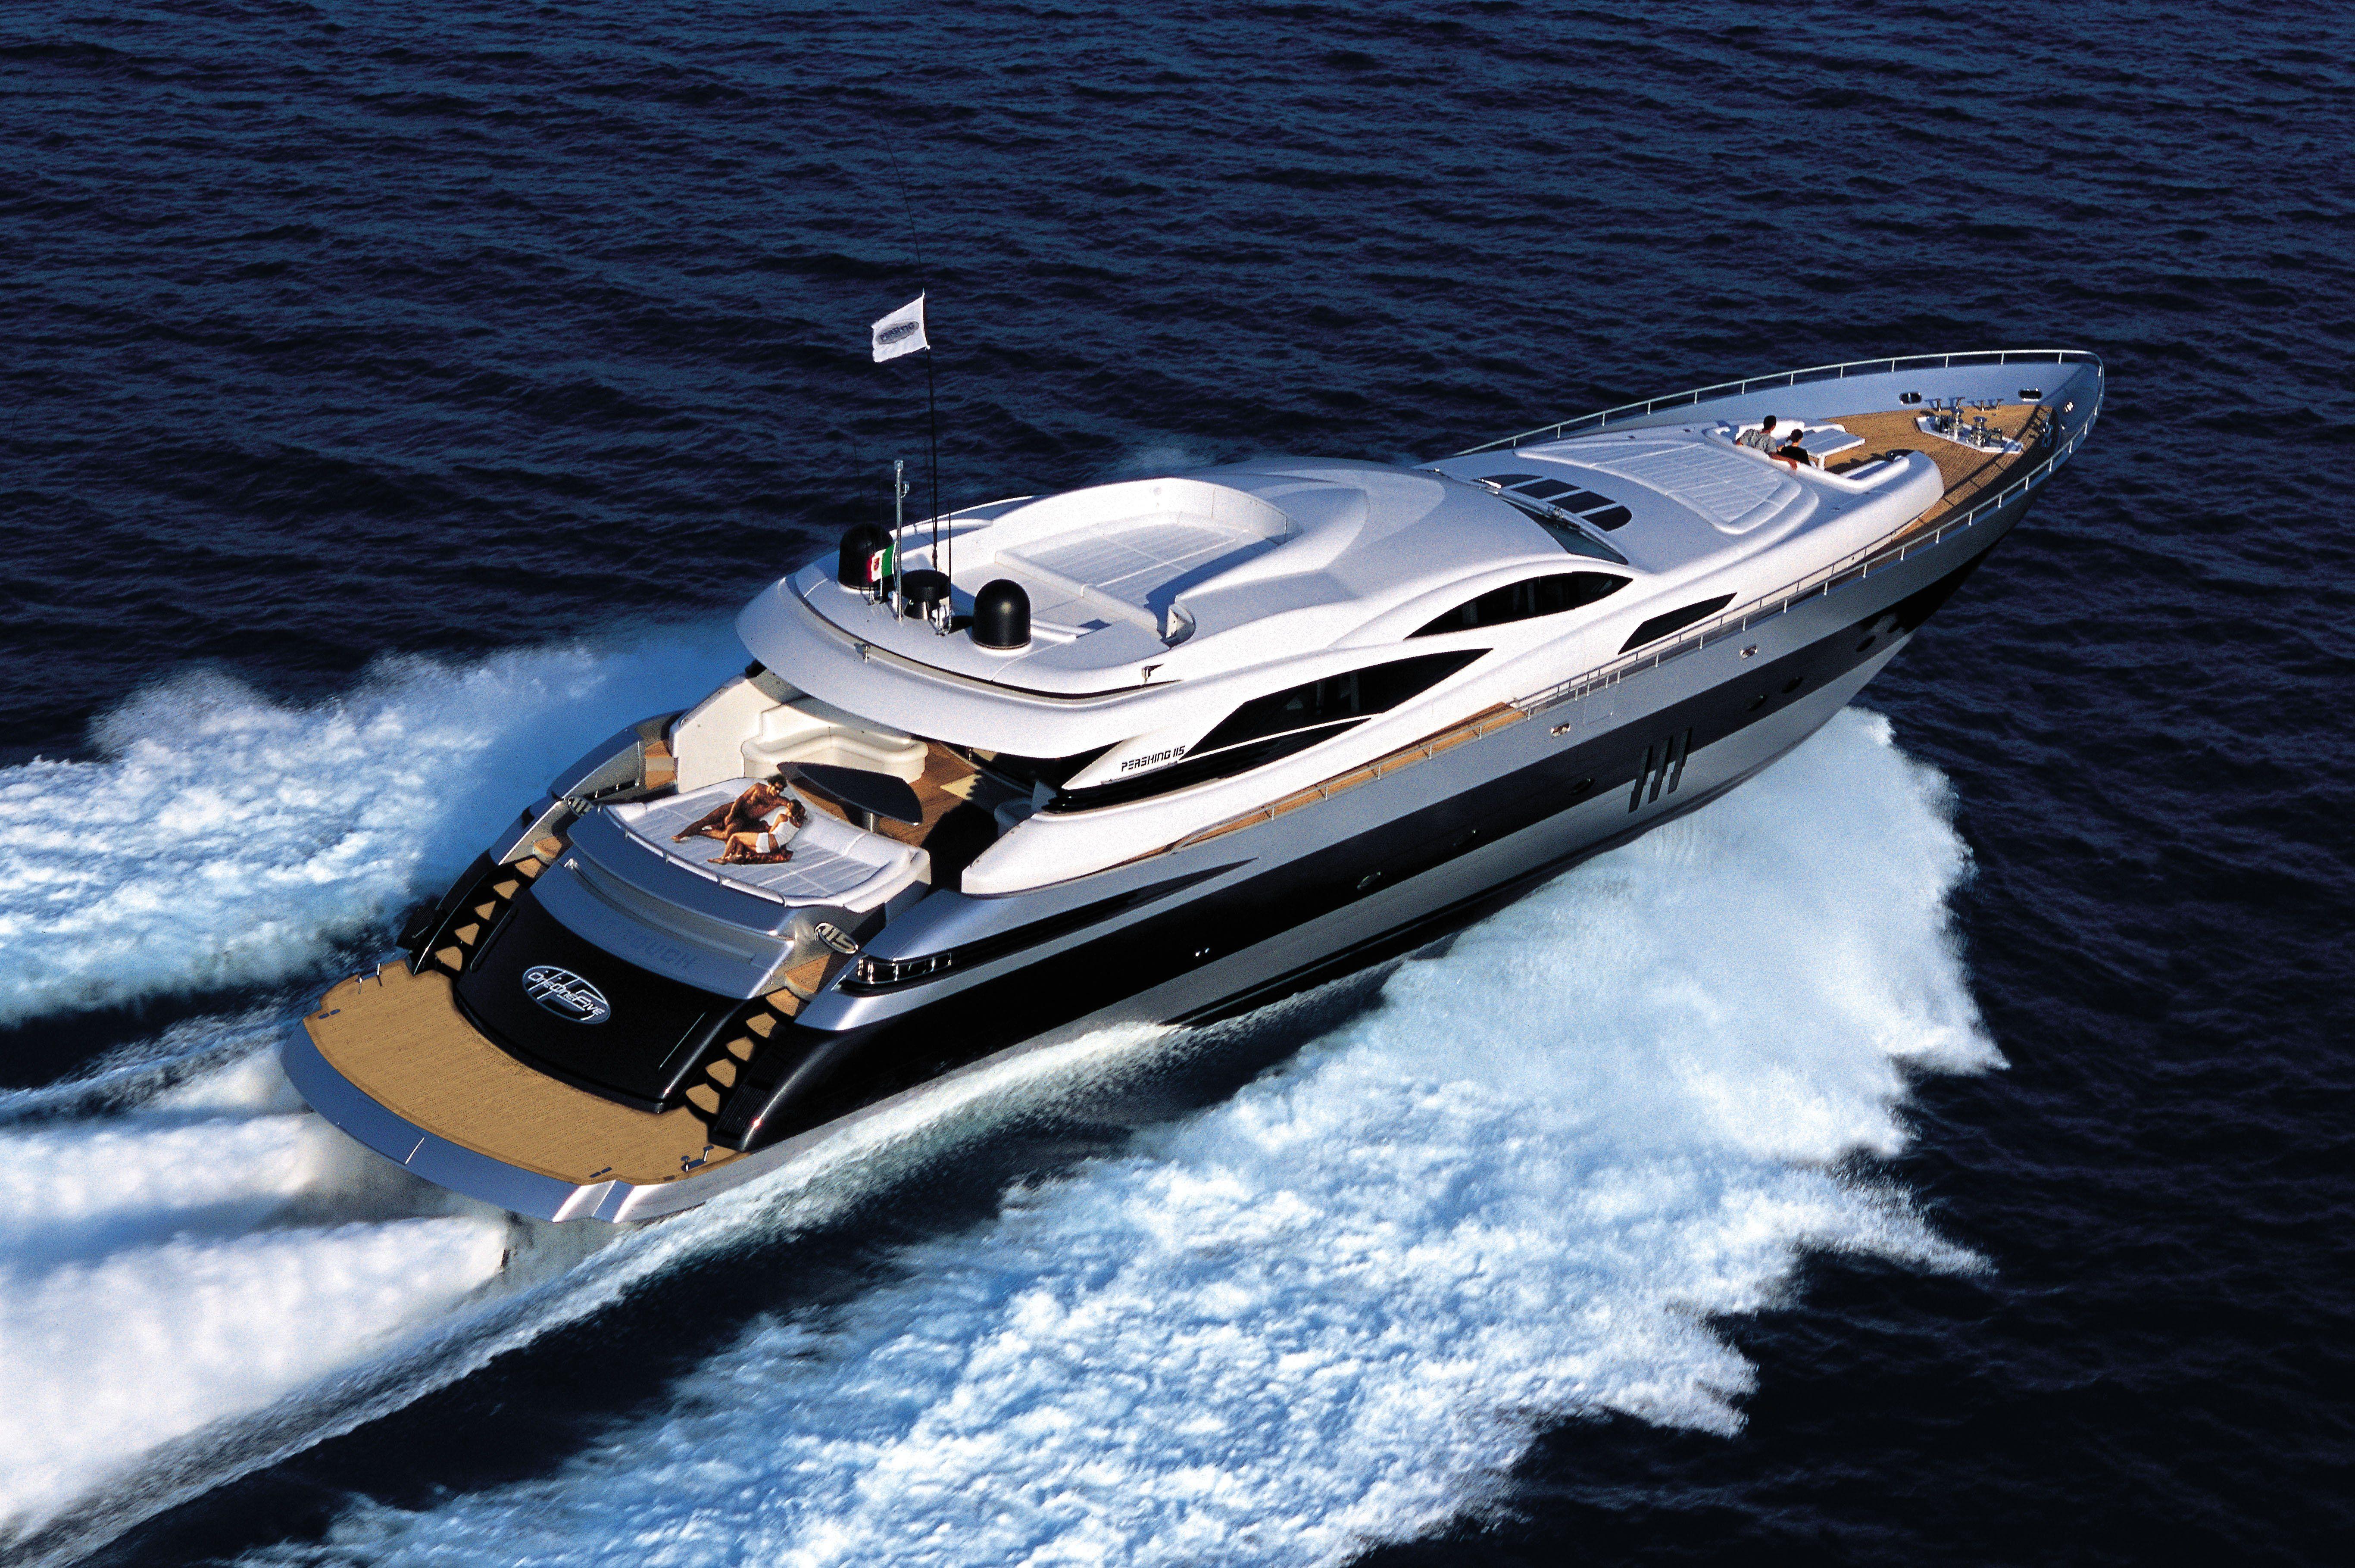 luxury yacht images free